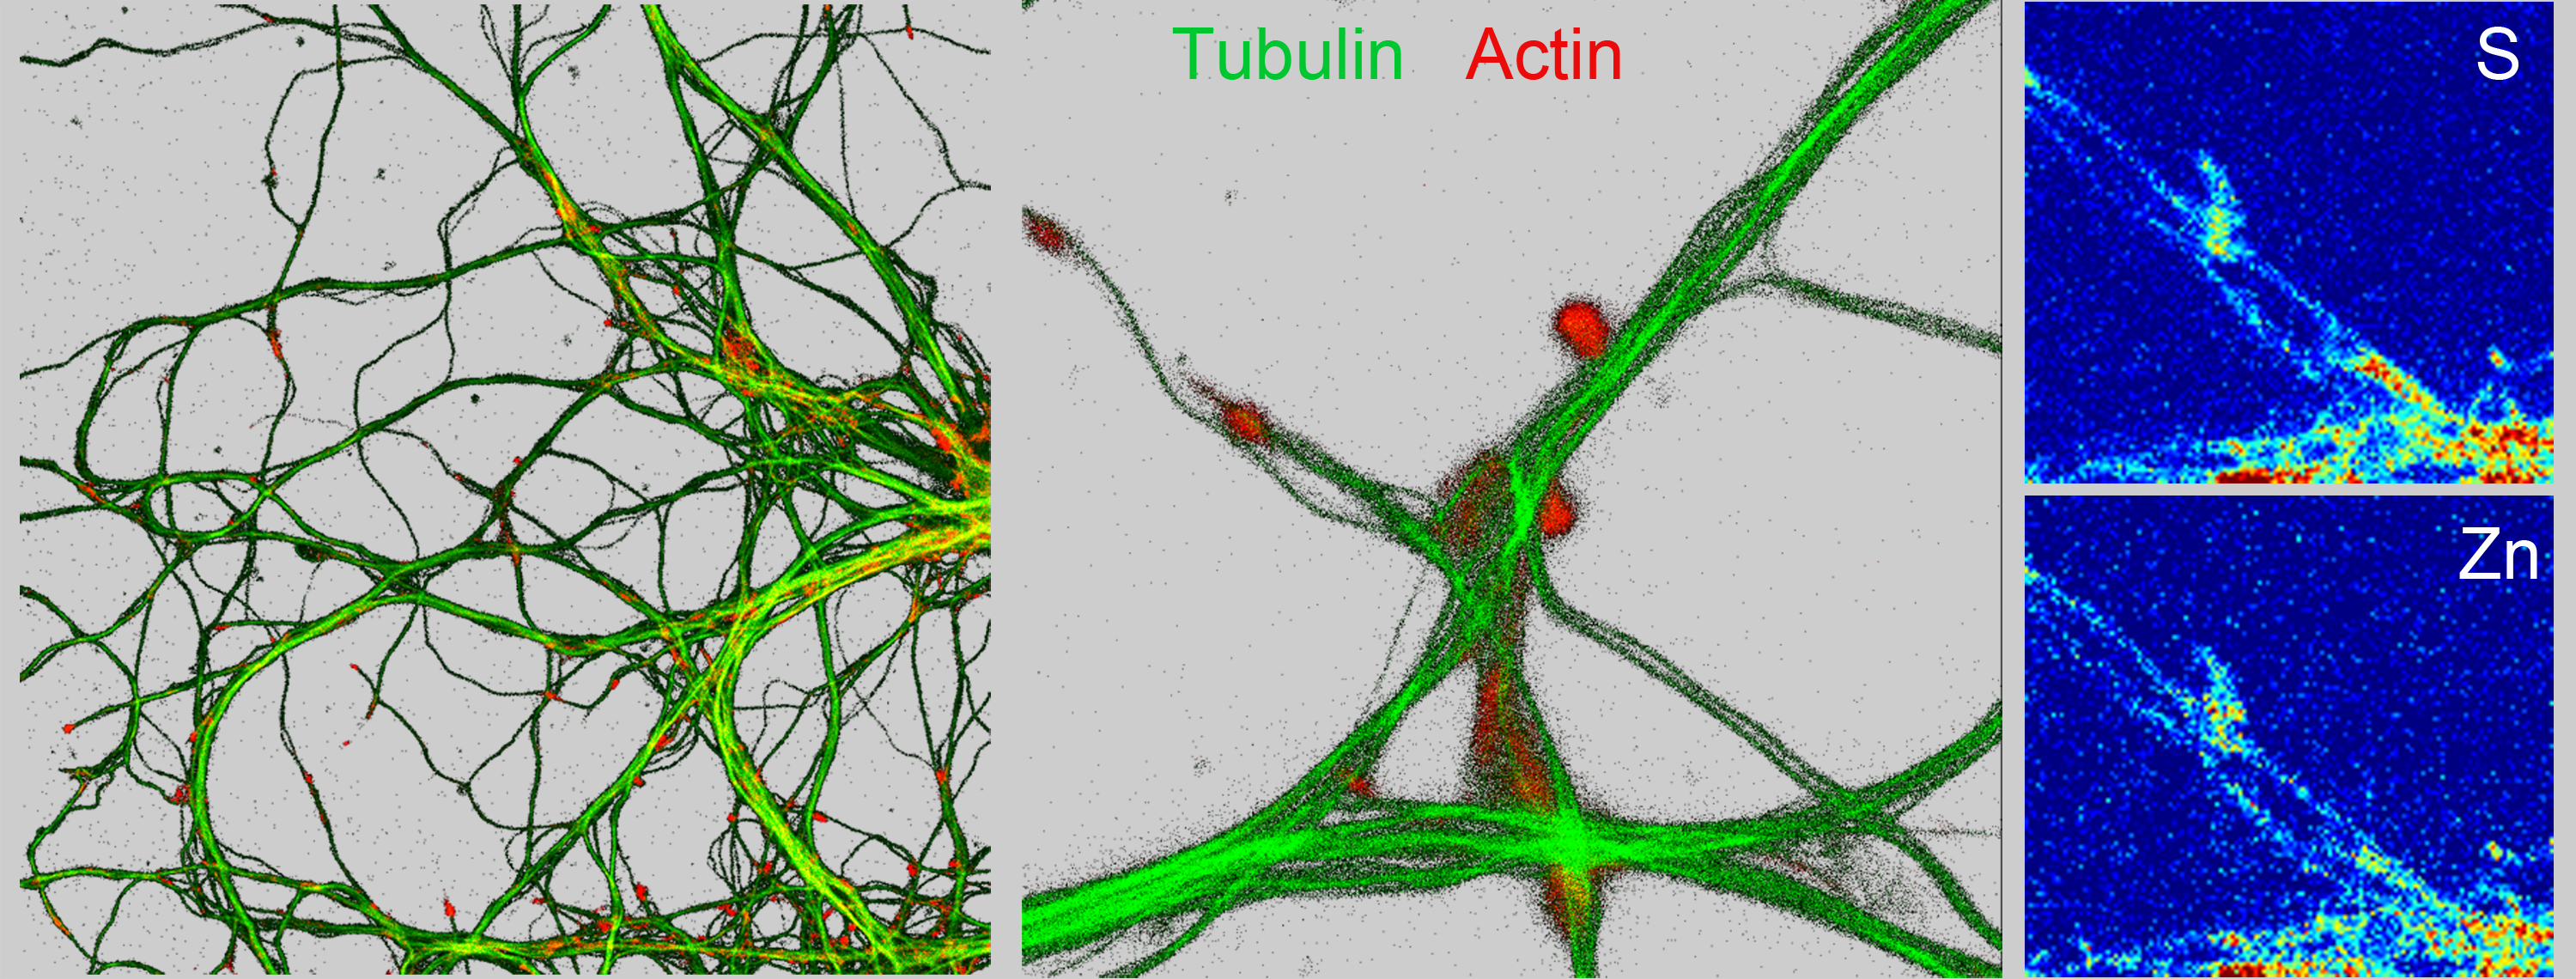 Nano-imagerie de la tubuline et de l’actine, du soufre et du zinc, de dendrites et compartiments synaptiques de neurones de l’hippocampe.